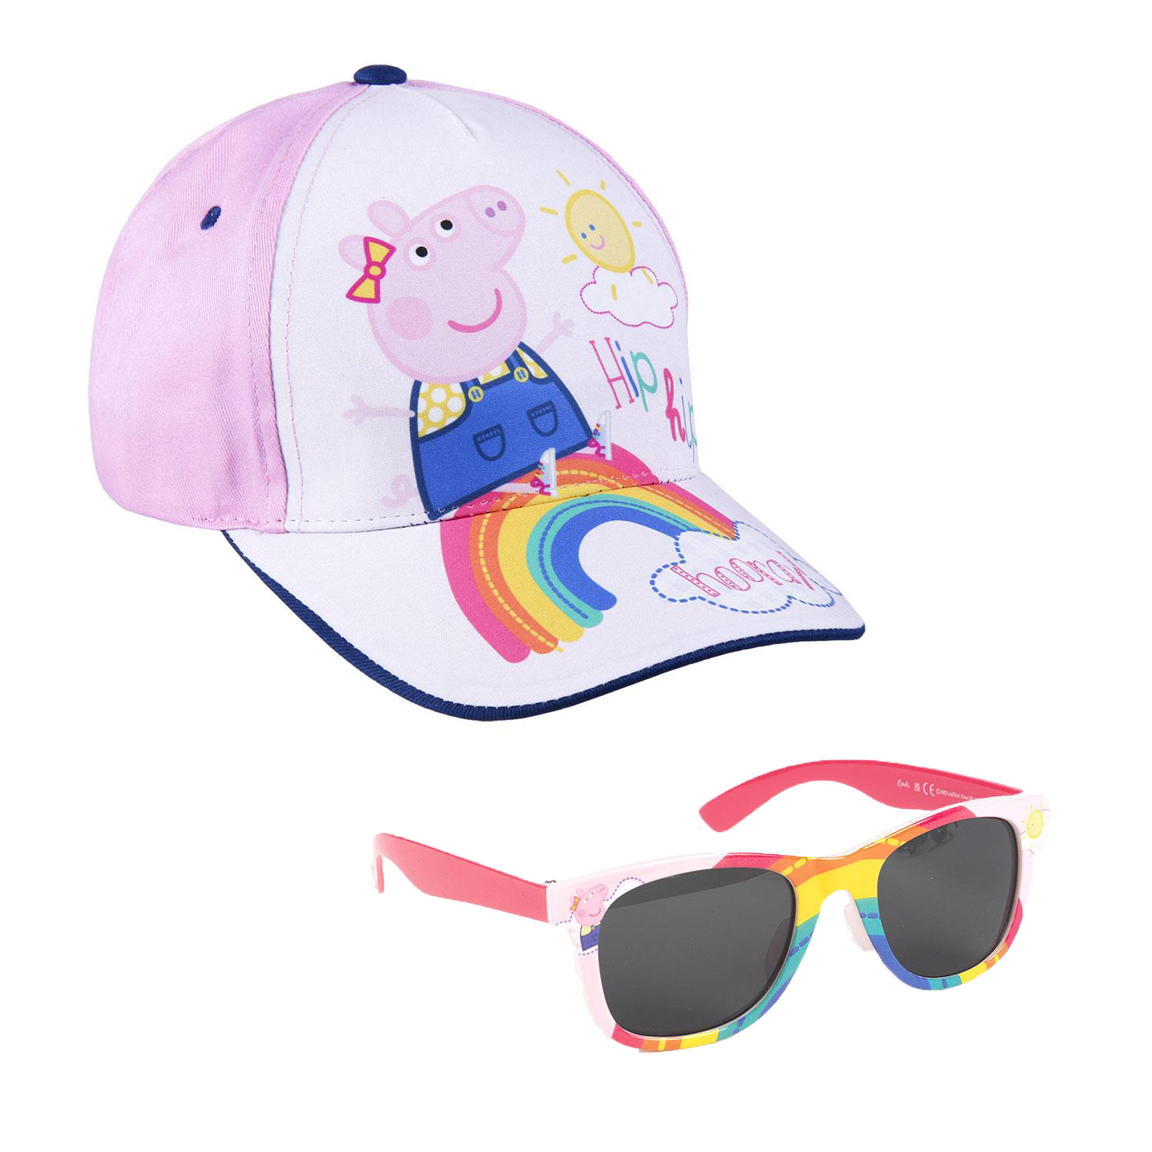 Комплект детски слънчеви очила и шапка Peppa Pig Rainbow 892 ще Ви помогнат да предпазите детето от слънчевите лъчи. Любимата Пепа ще зарадва детето и ще го насърчи да носи своите нови, цветни аксесоари. Илюстрациите несъмнено ще предизвикат интерес